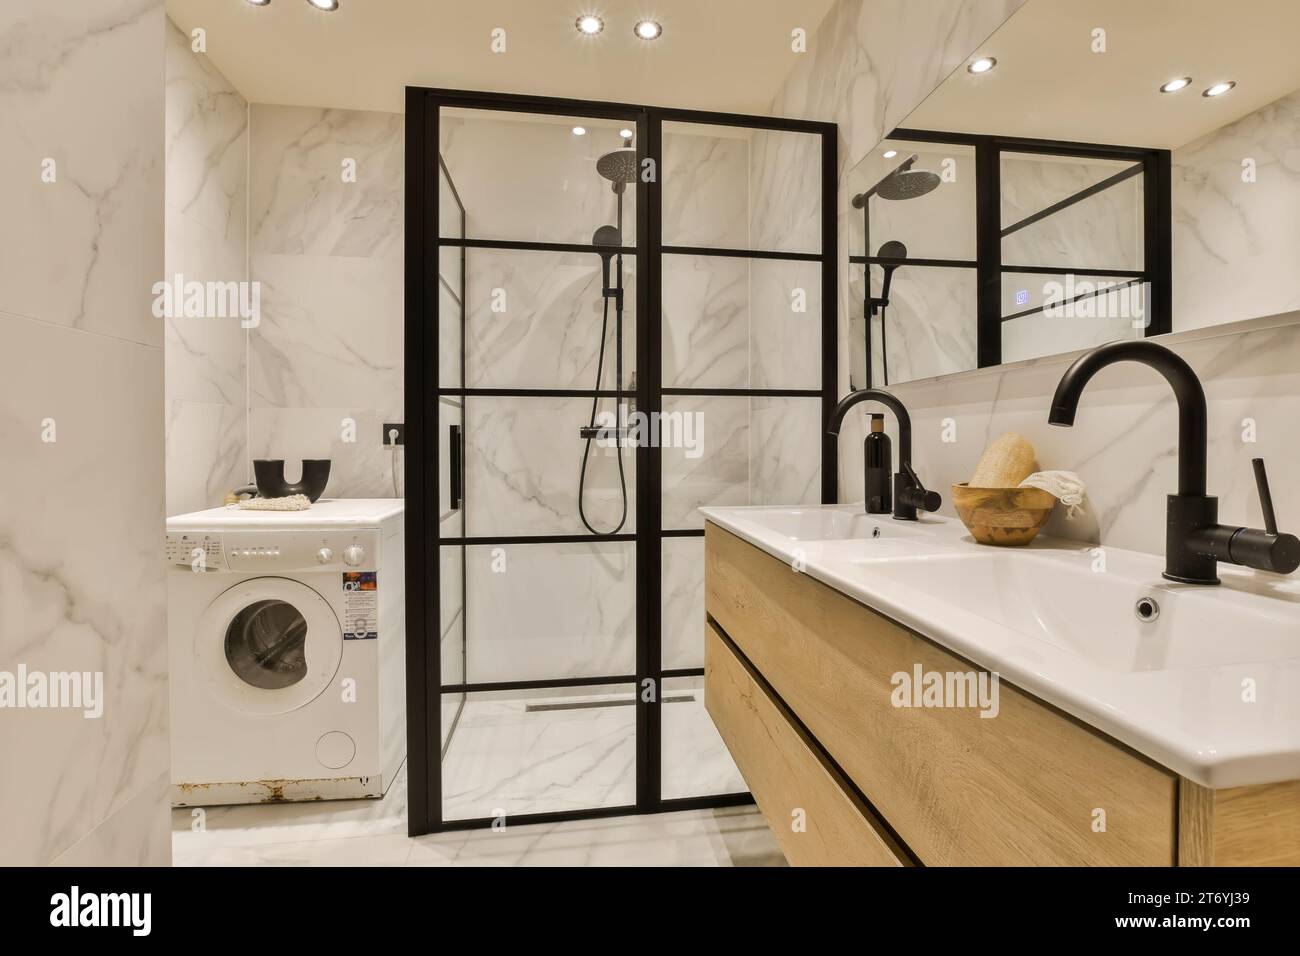 une salle de bains moderne avec des murs en marbre blanc et des miroirs encadrés noirs sur le mur, il y a une rondelle dans le coin Banque D'Images